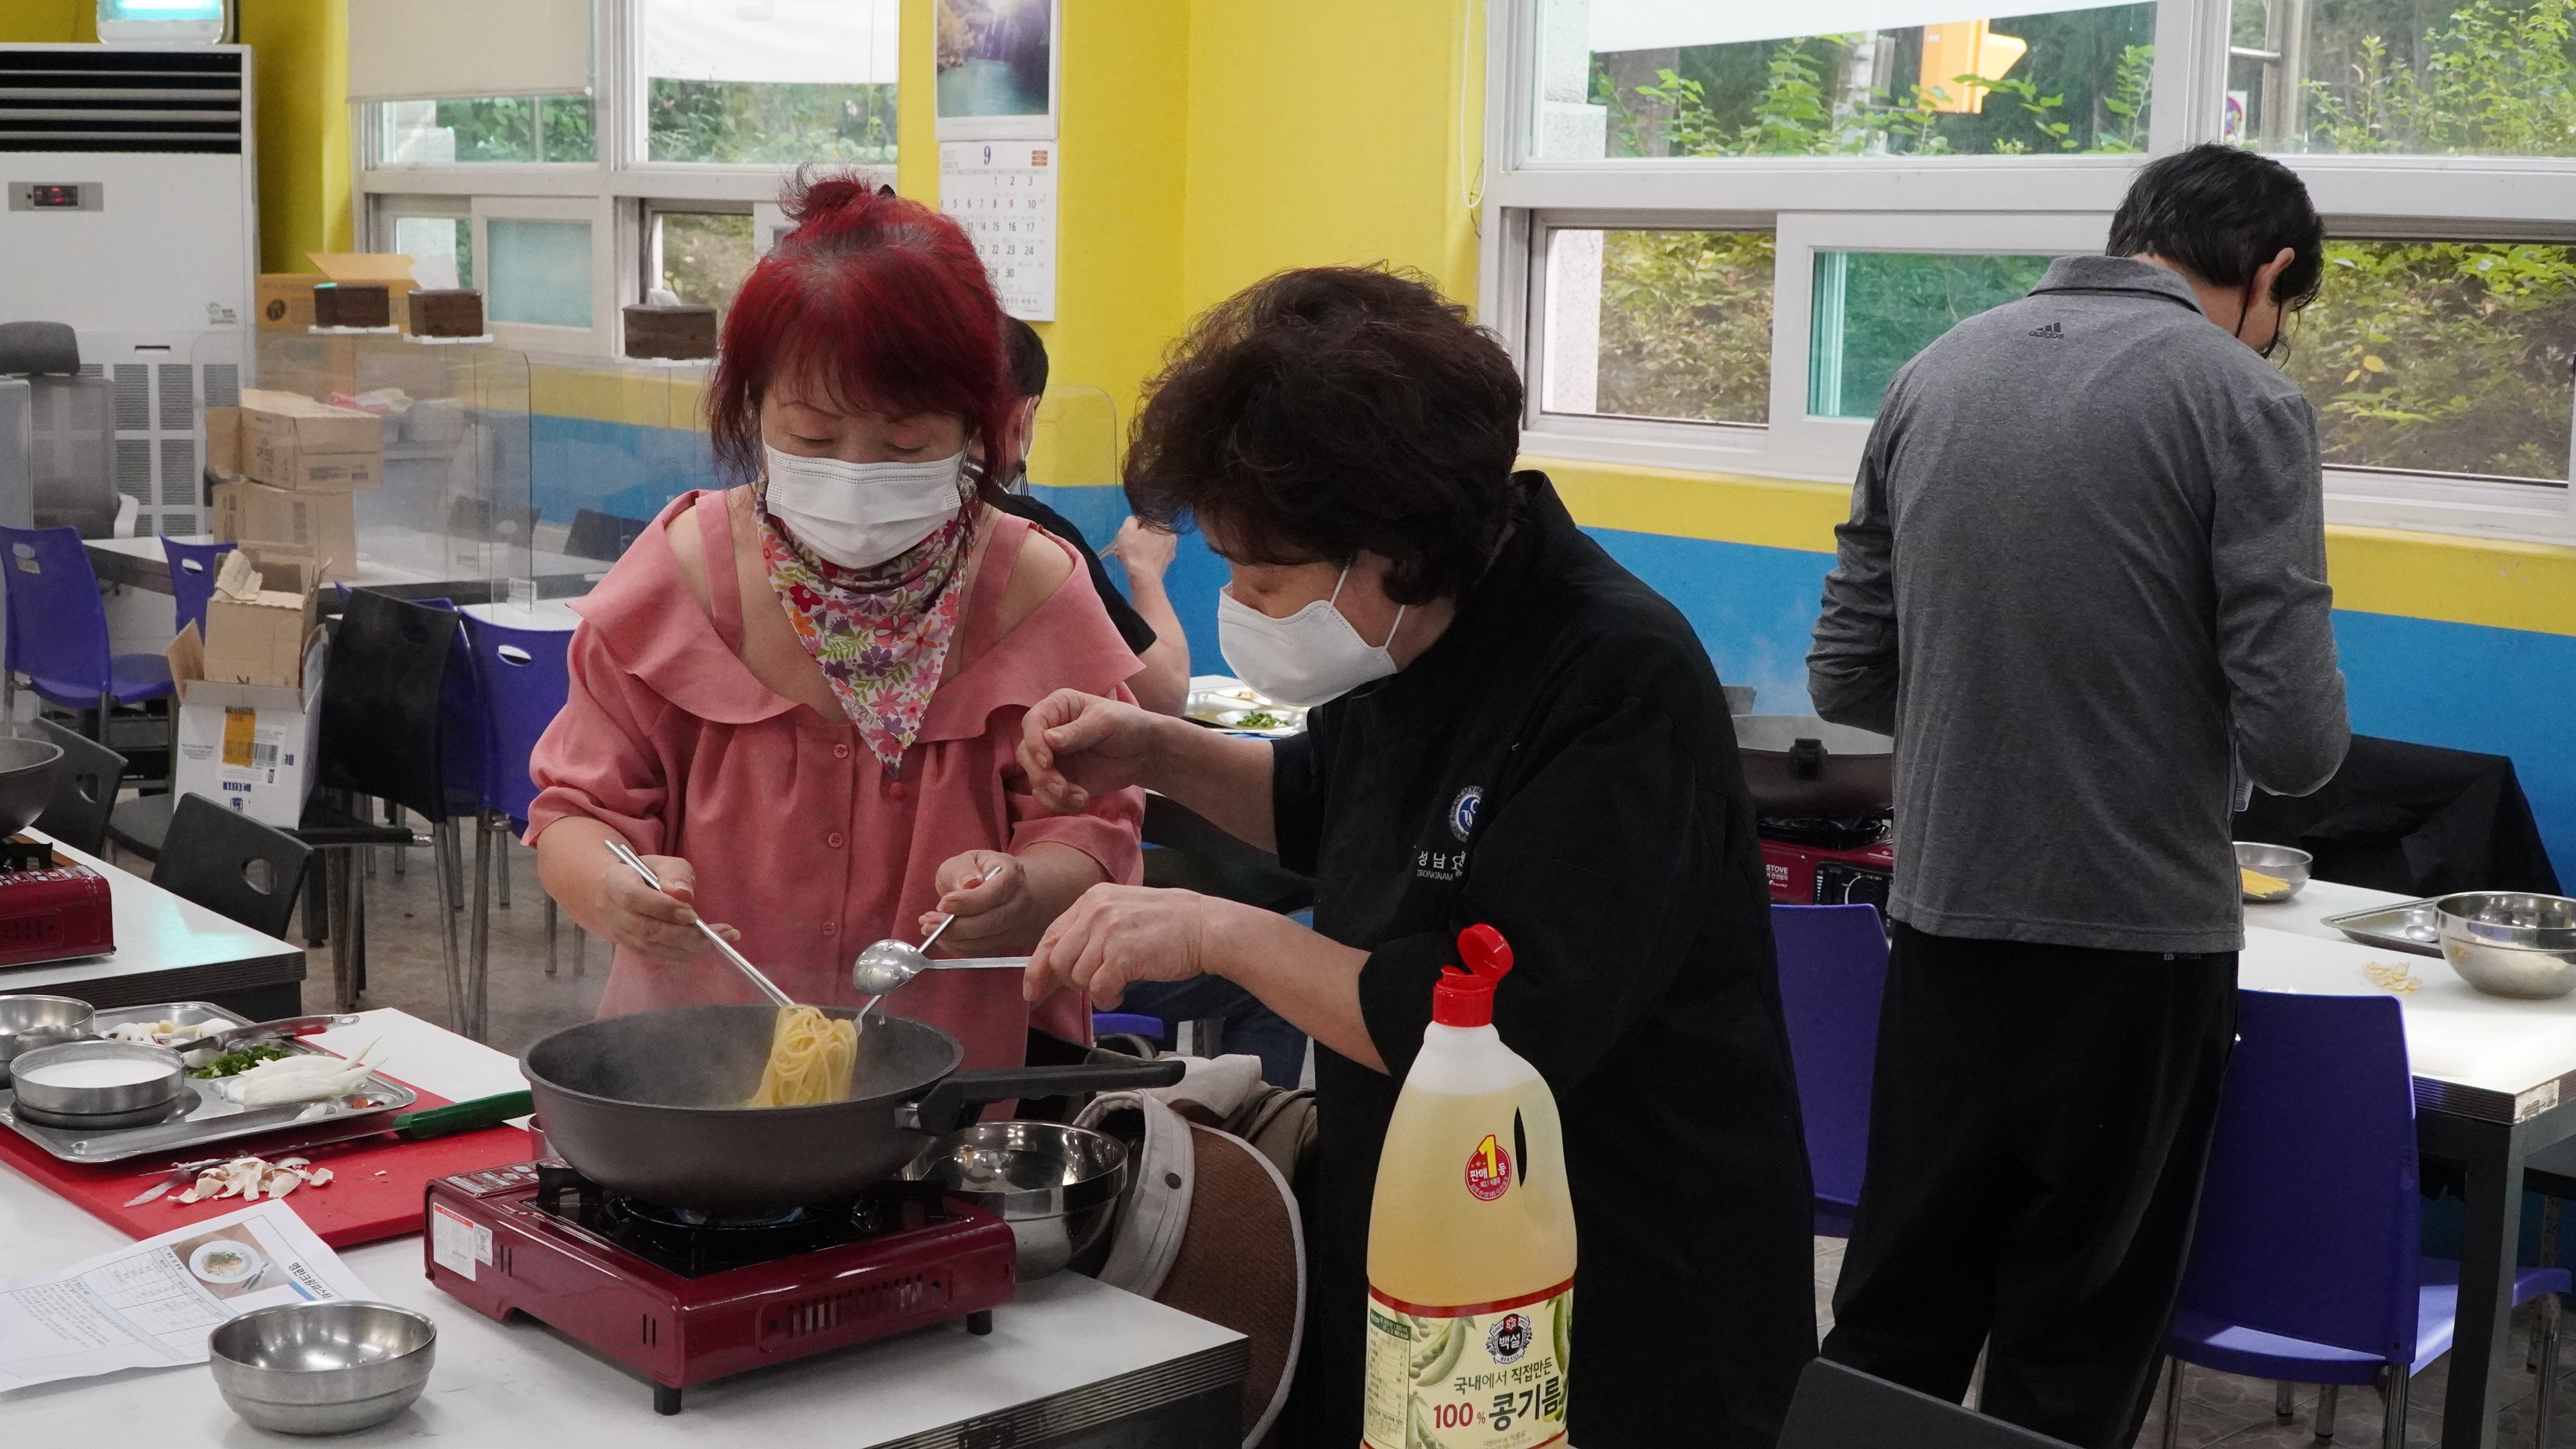 중간중간 점검도 해주시는 강사님!
참여자들은 더욱 열심히 요리를 하는 모습을 보여주셨습니다!